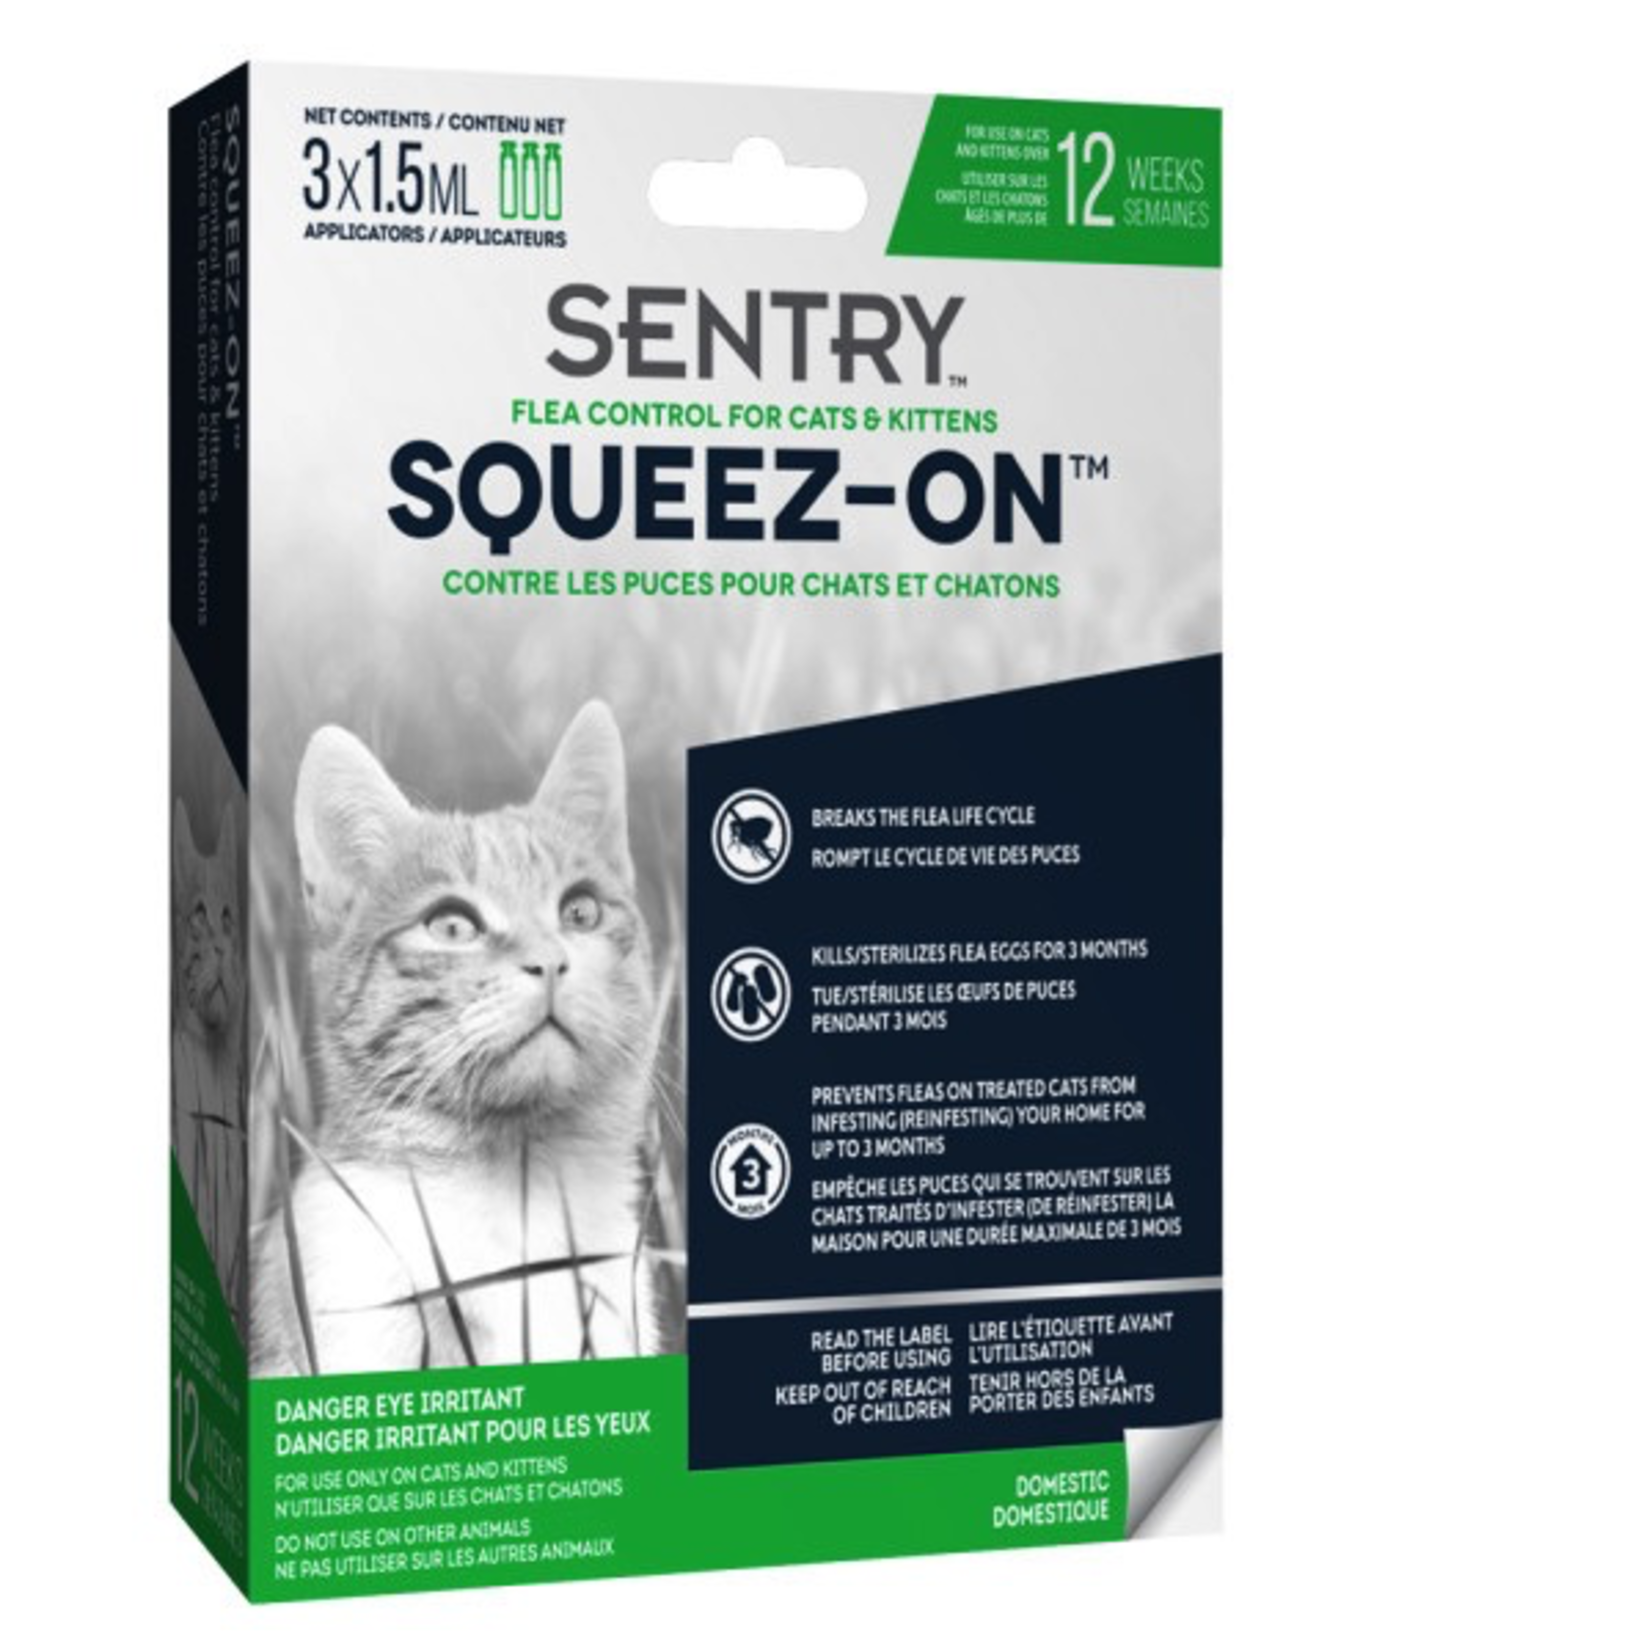 SENTRY Sentry Cat & Kitten Flea Control